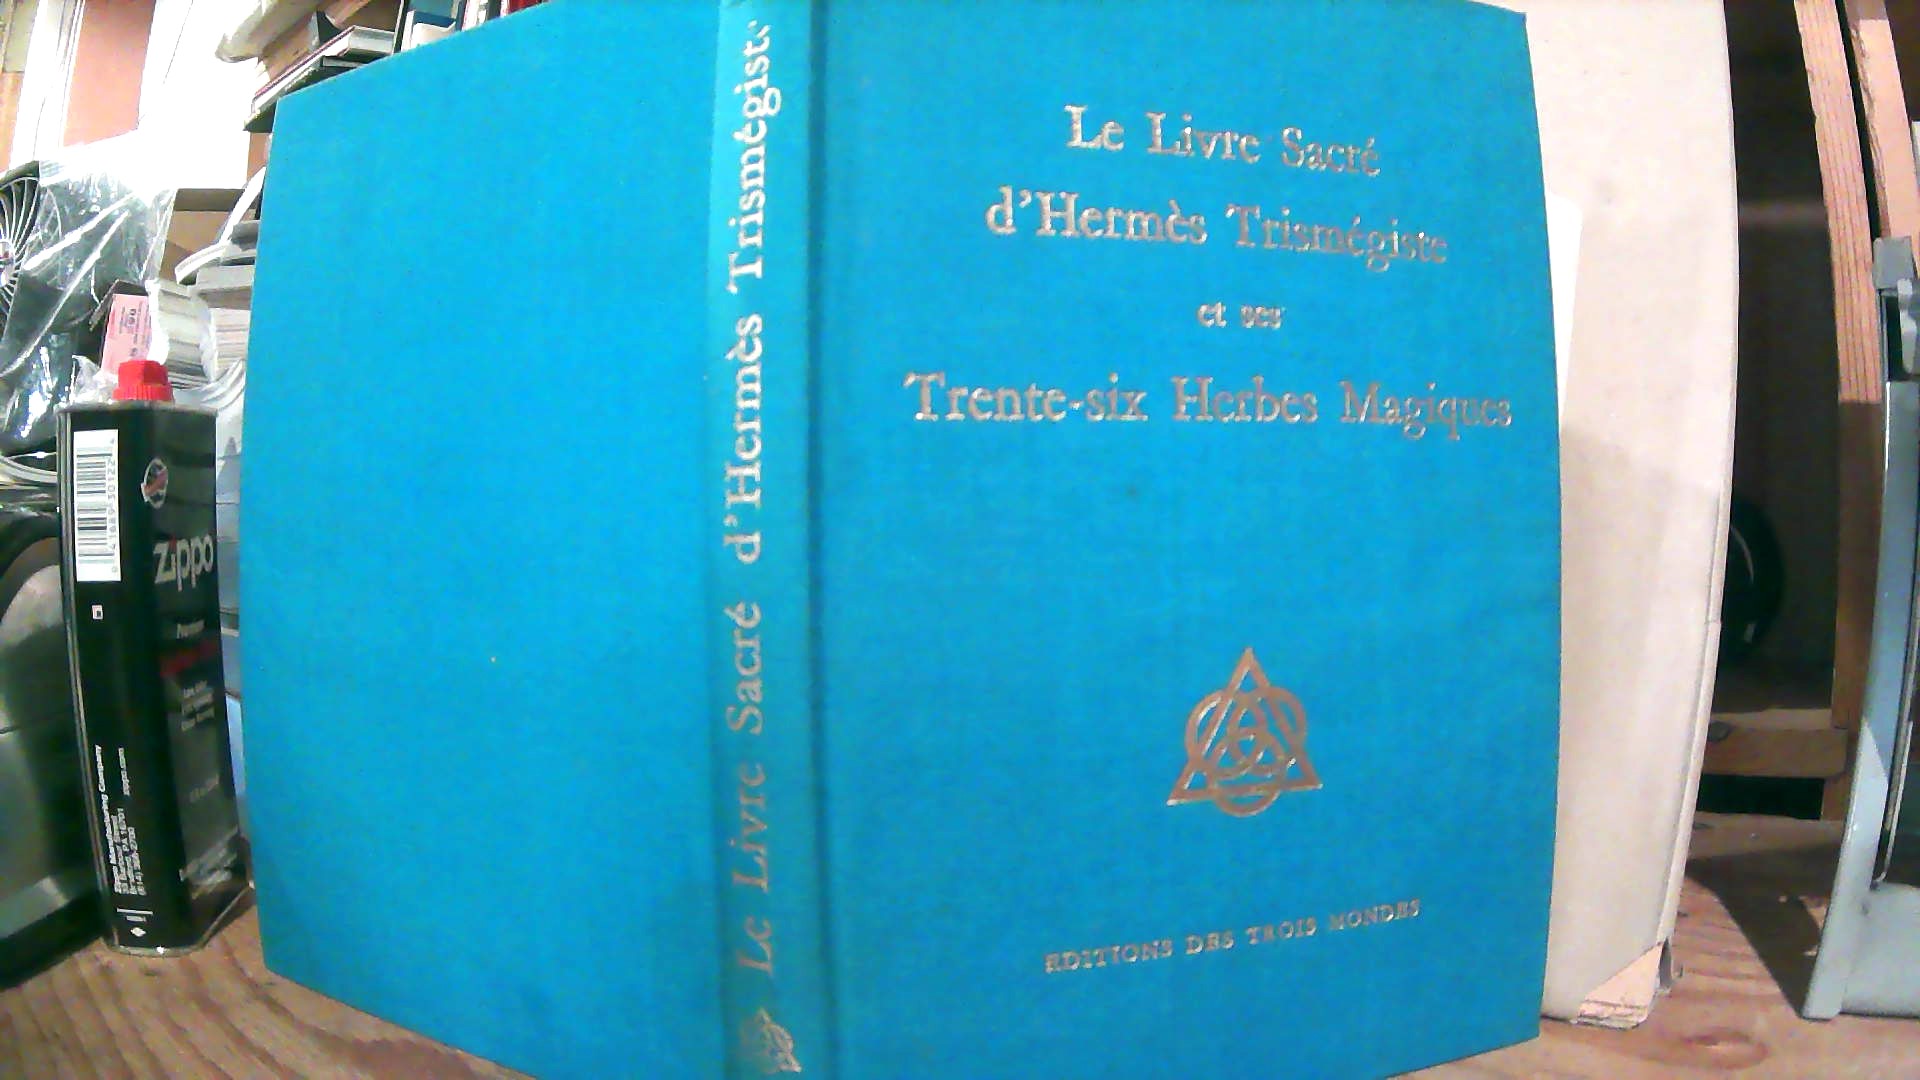 Le Livre Sacre D'Hermes Trismegiste Et Ses Trente-Six Herbes